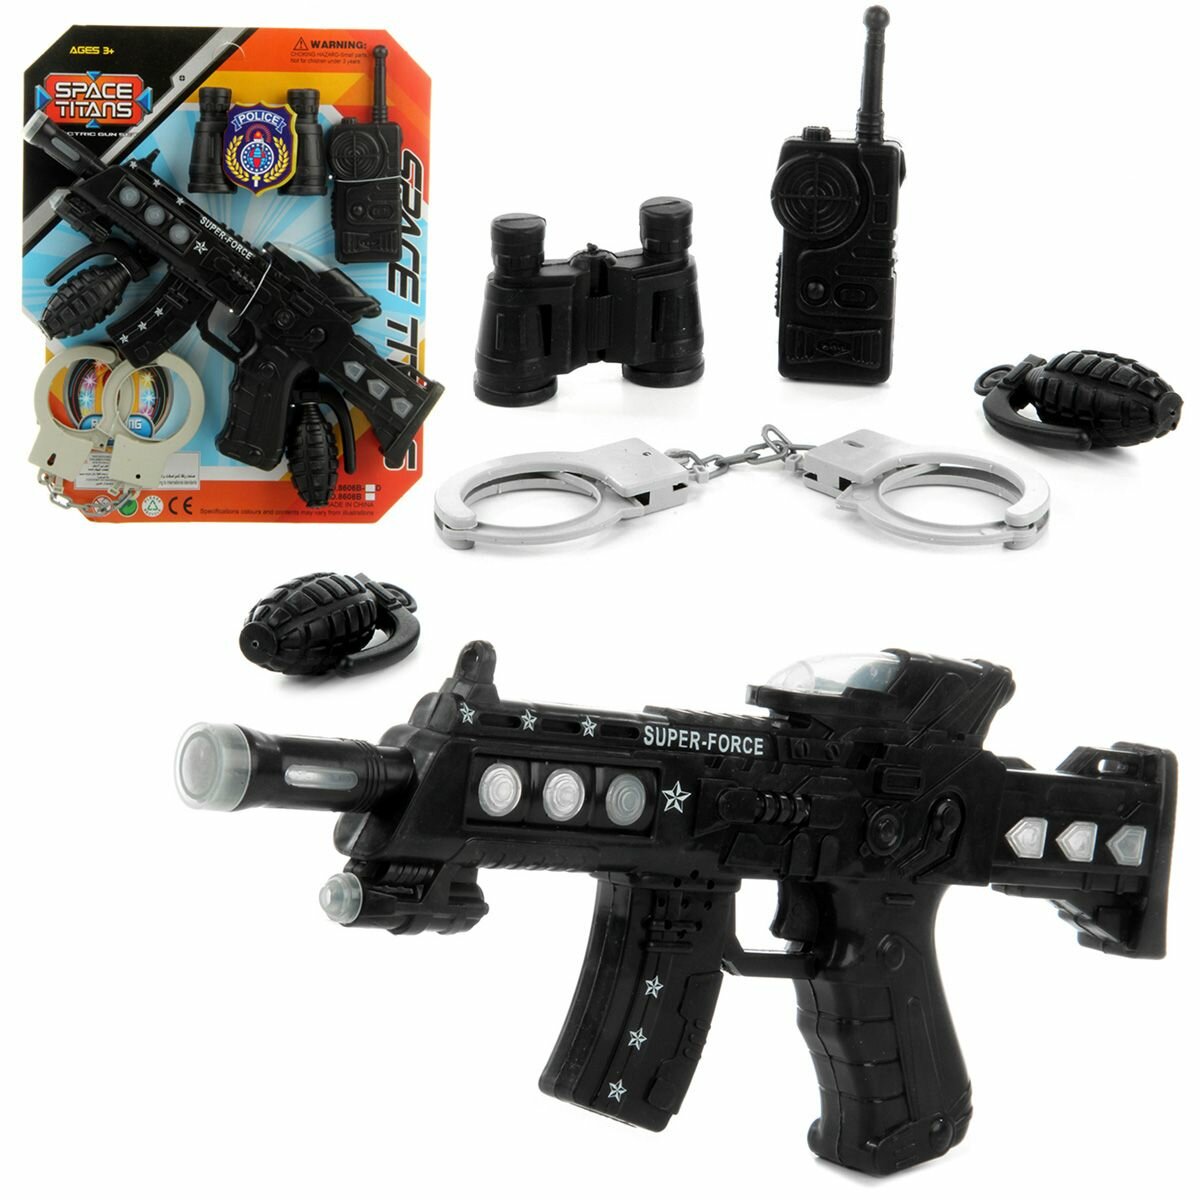 Игровой набор оружия, автомат на батарейках со светом и звуком, наручники, граната, бинокль, рация, Veld Co